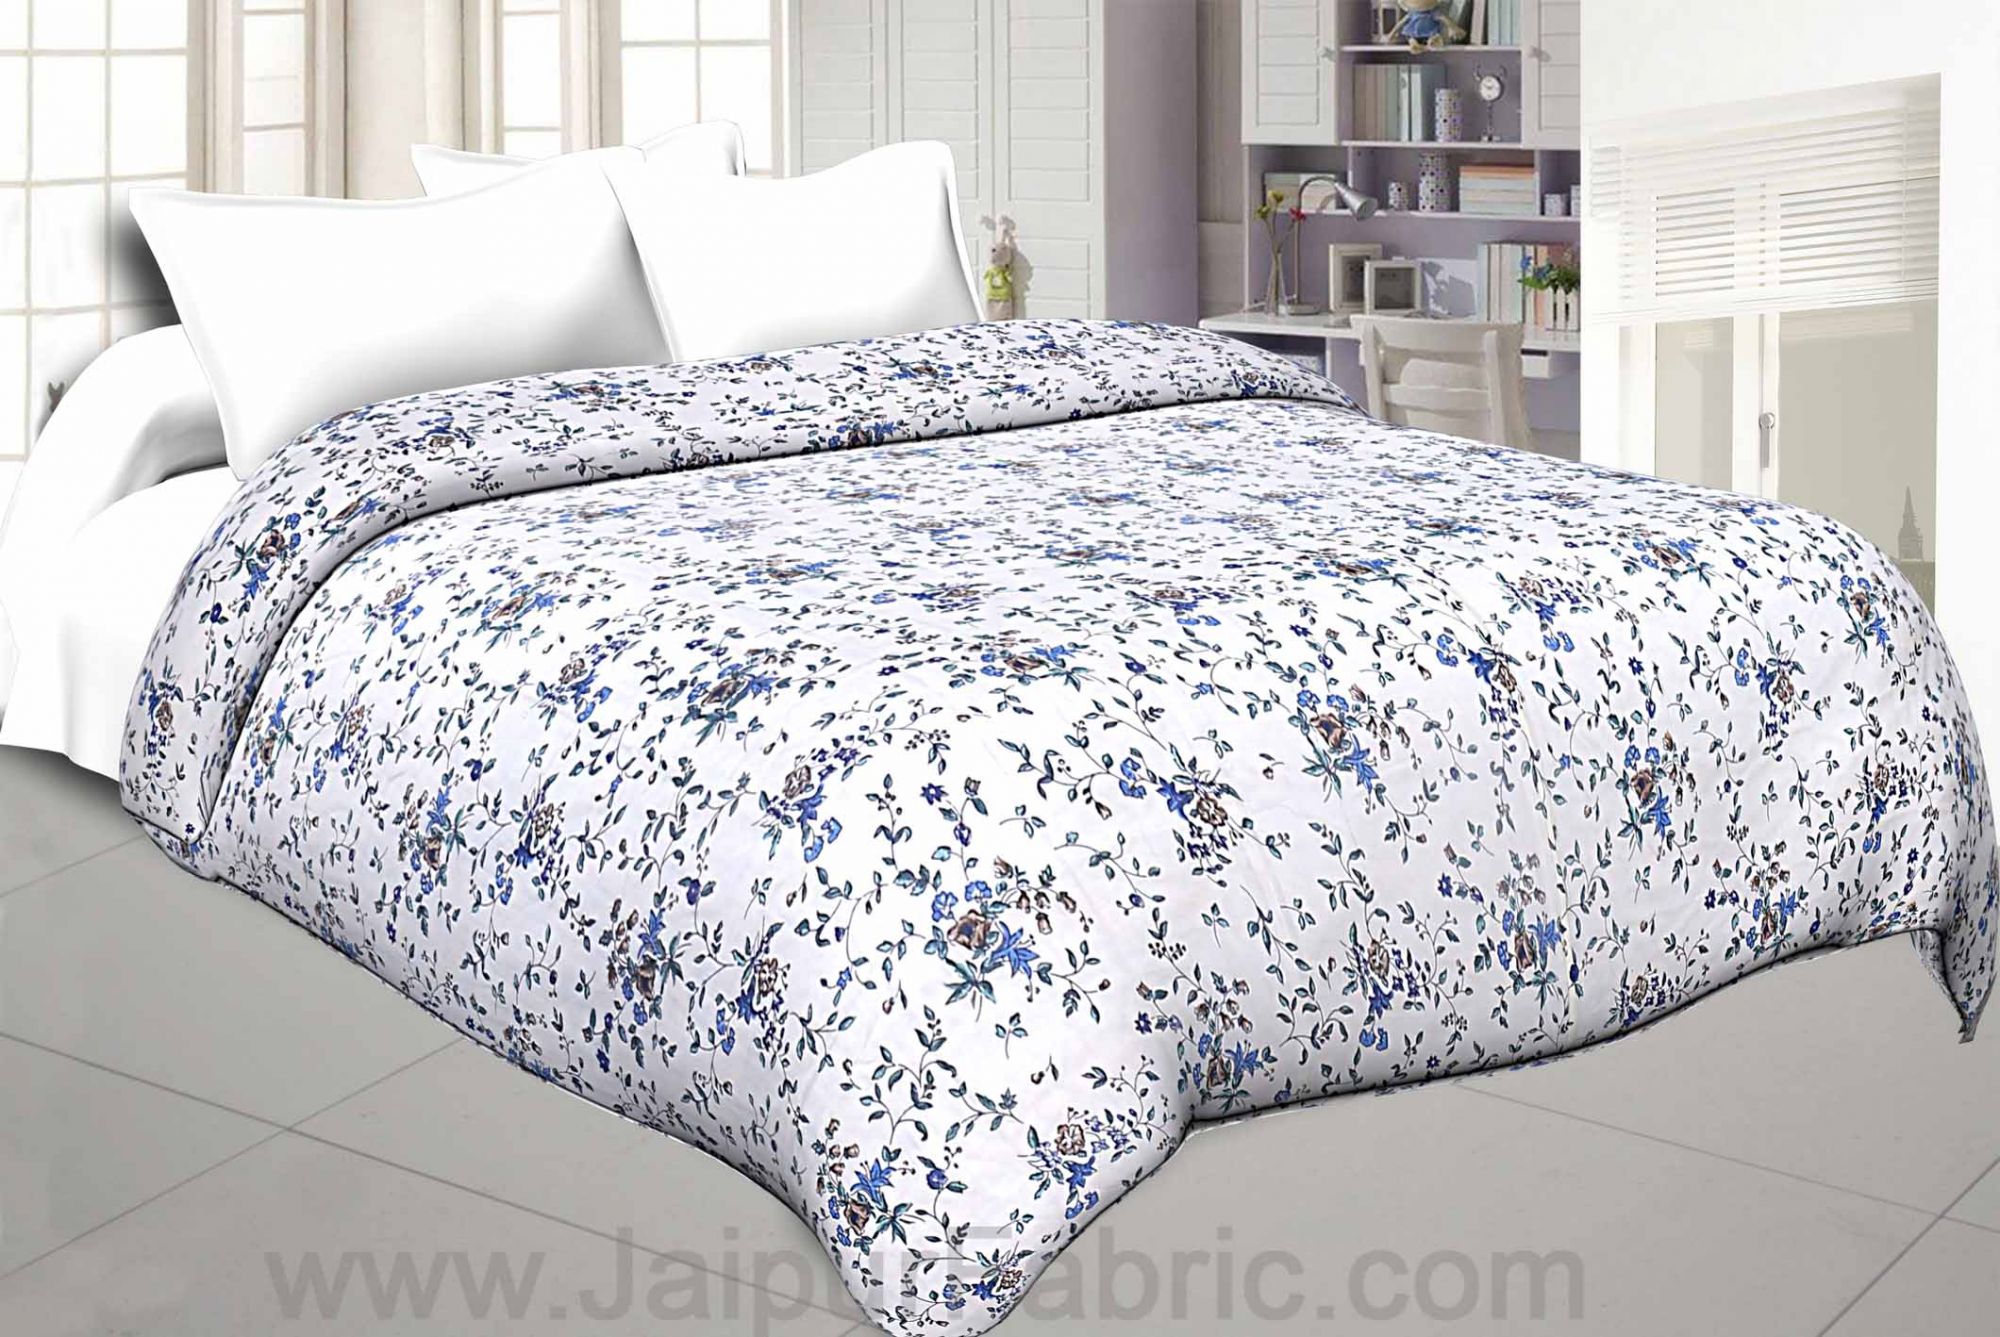 Comforter Bedsheet Combo